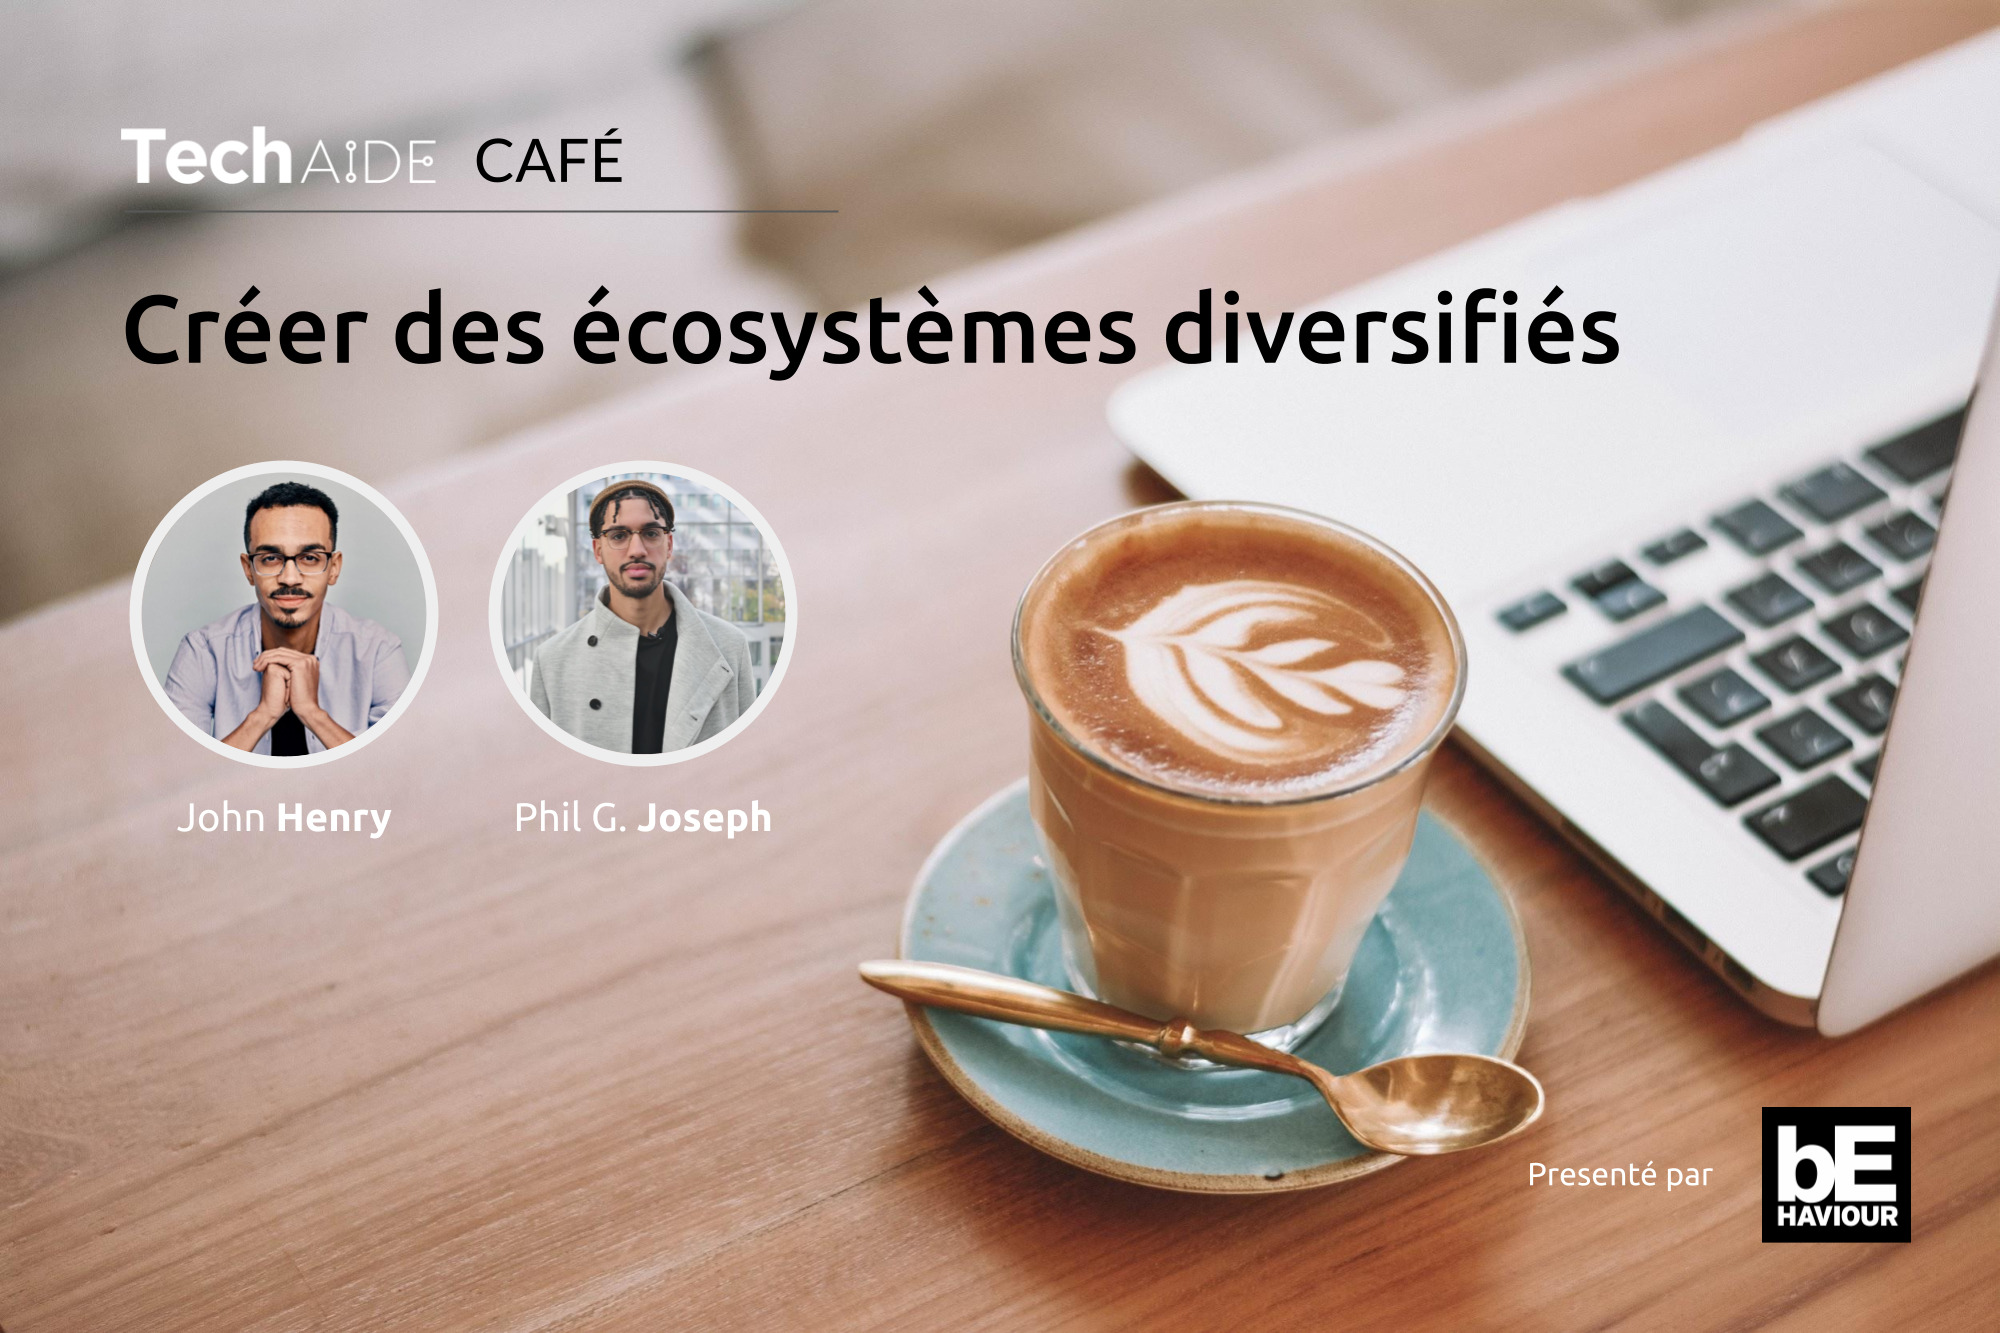 Café Techaide avec John Henry sur comment créer des écosystèmes diversifiés